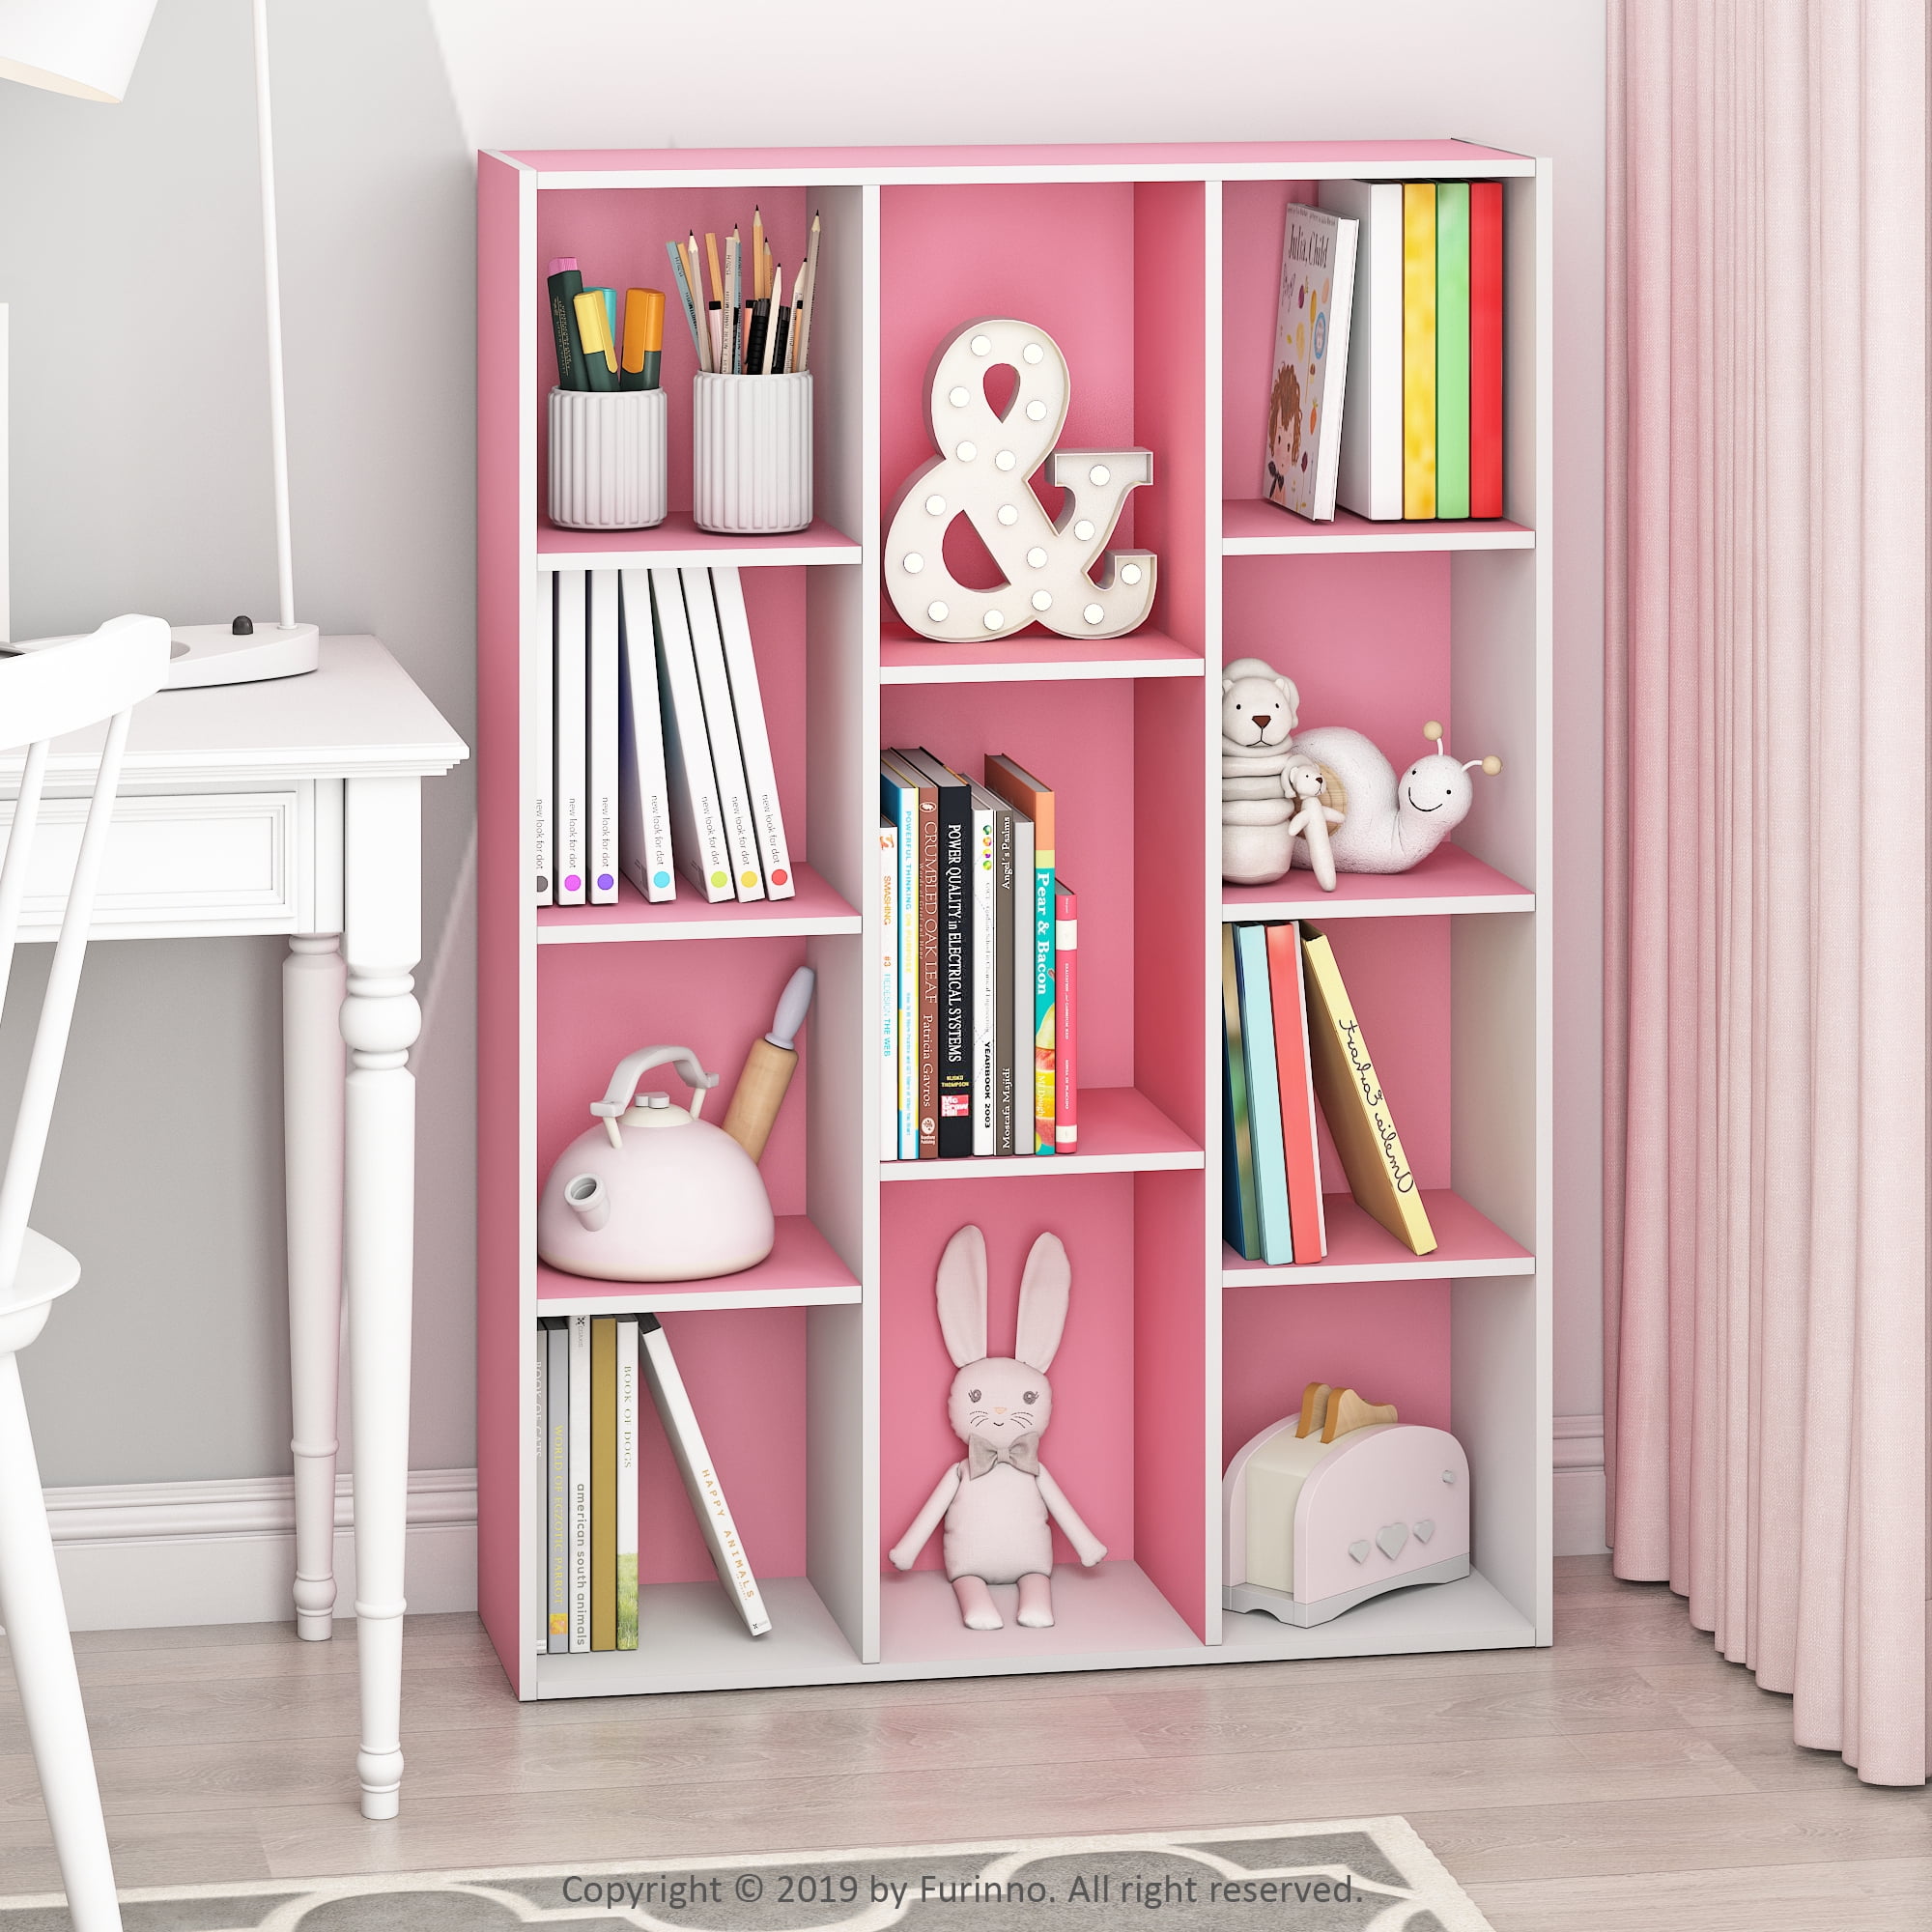  Furinno Bookcase for Simple Design